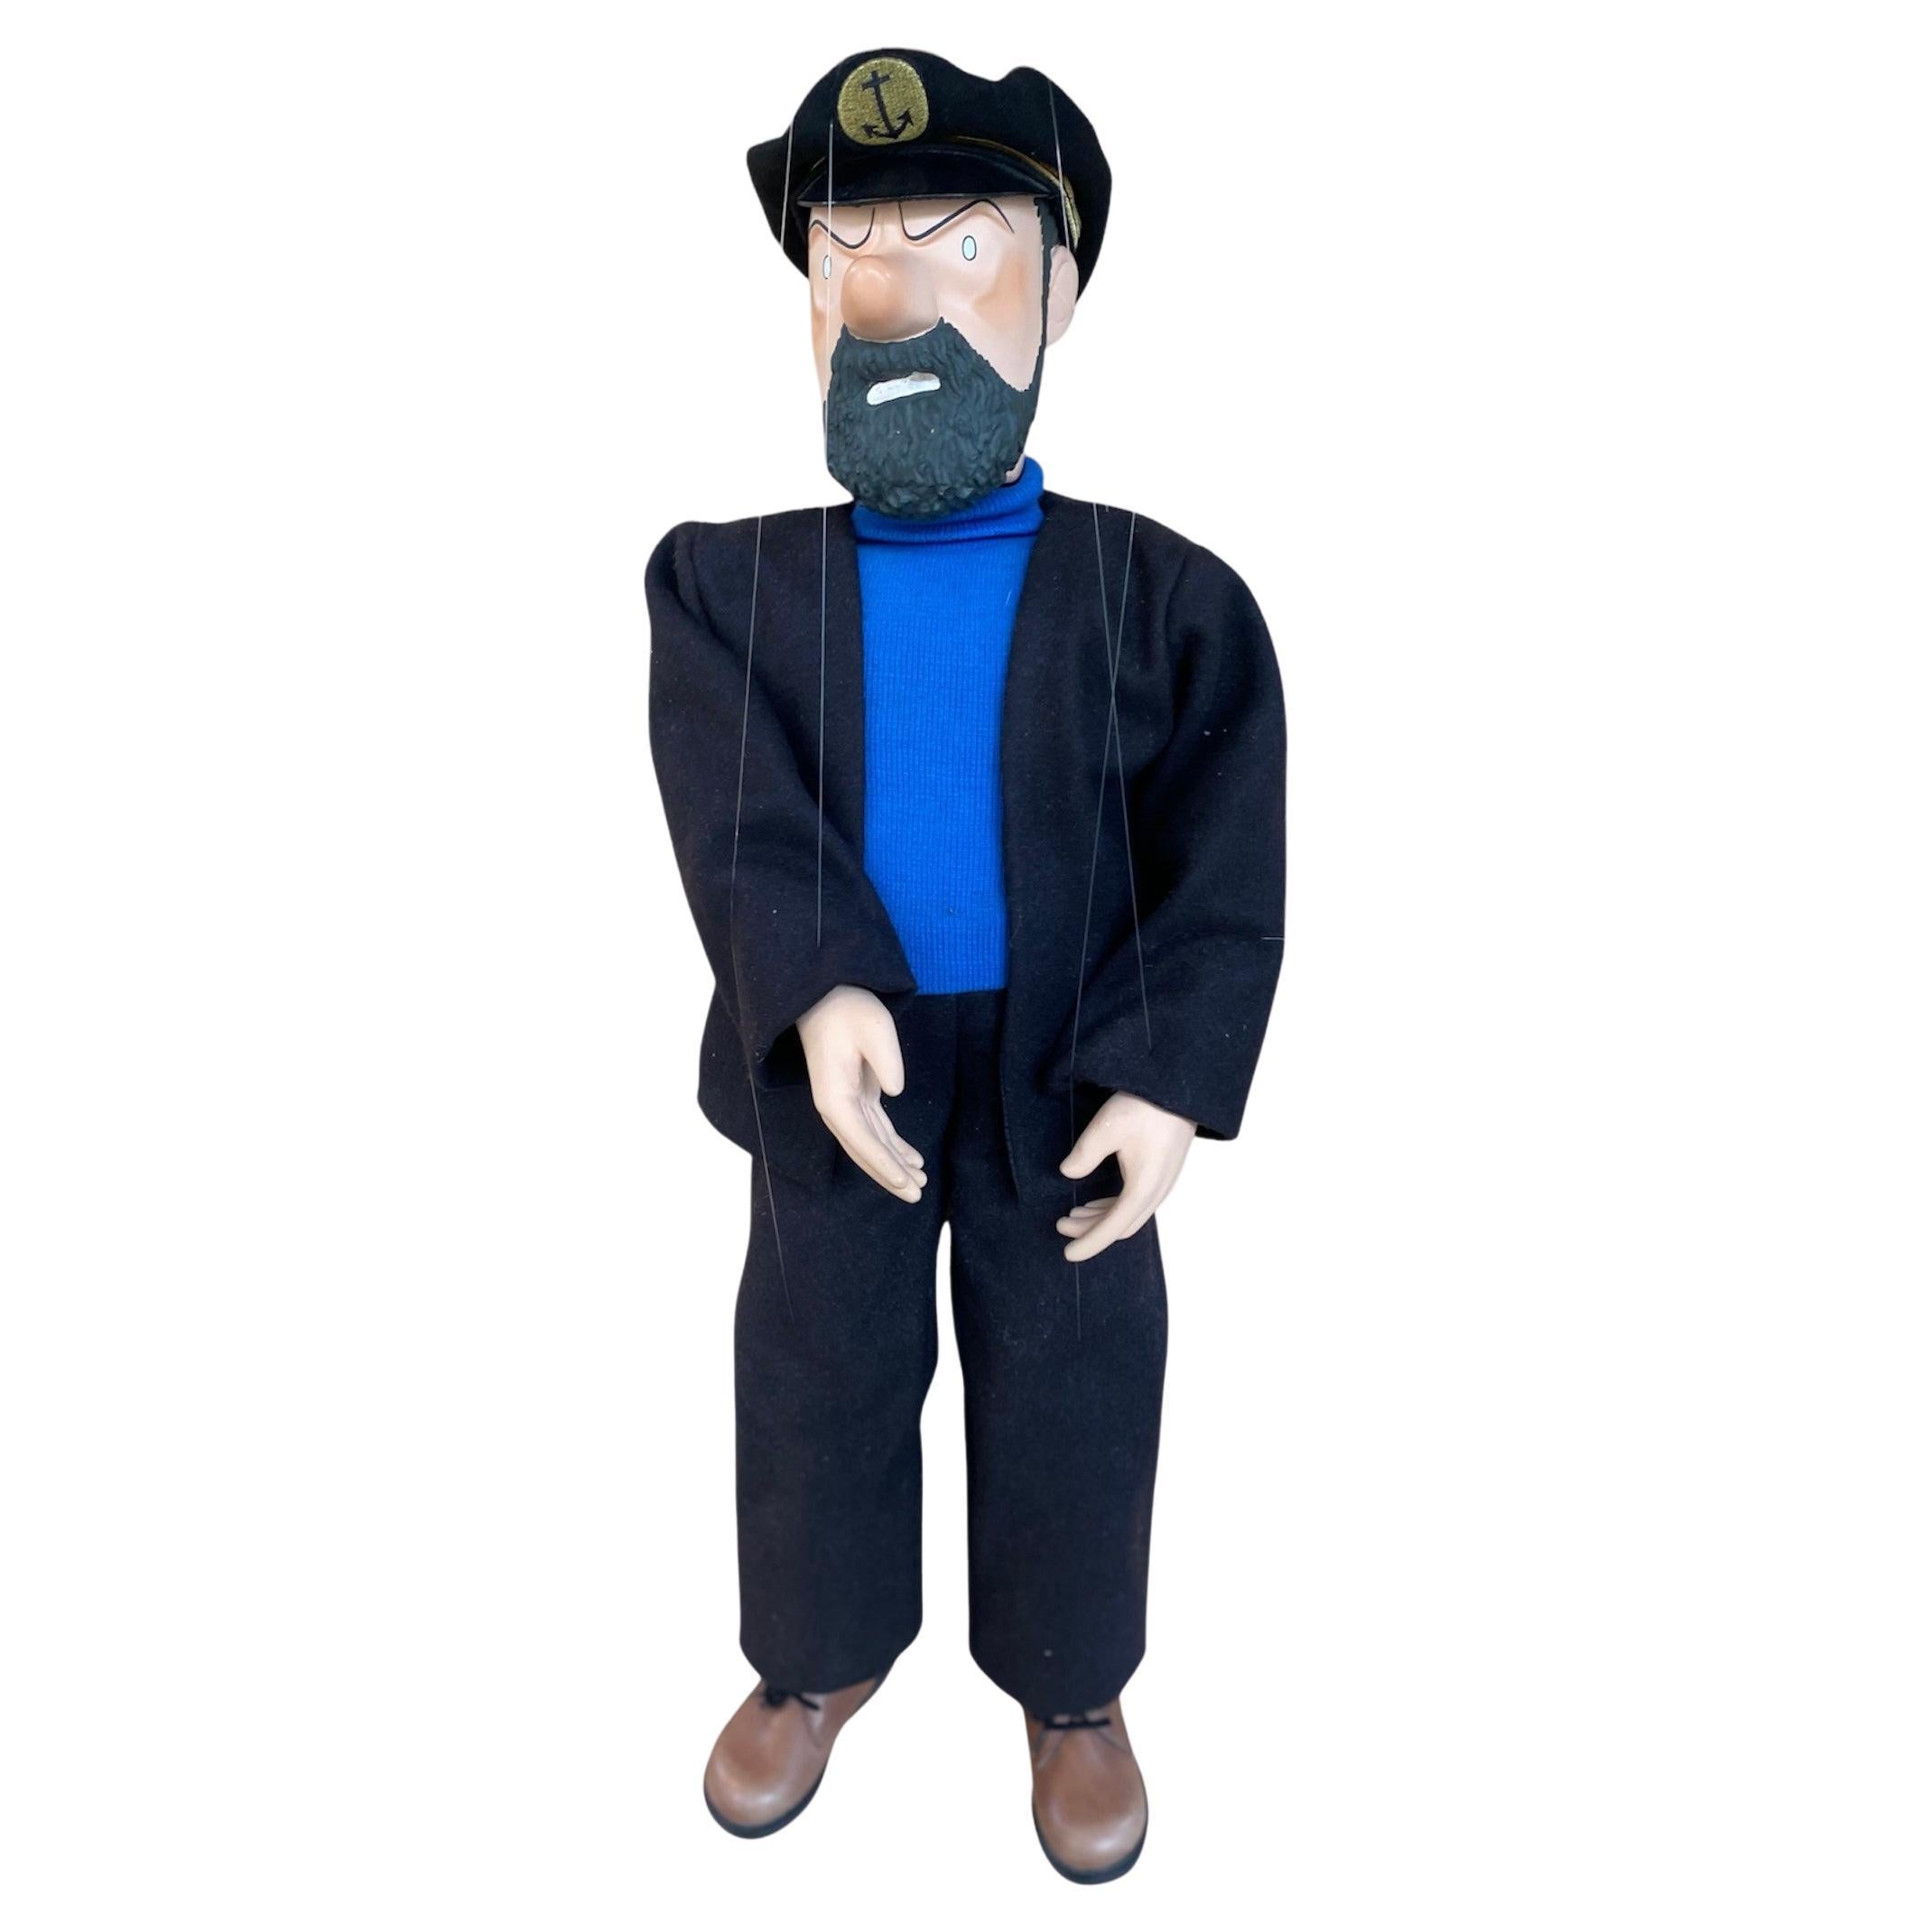 Très rare marionnette du Capitaine Haddock Hergé, Georges Remi